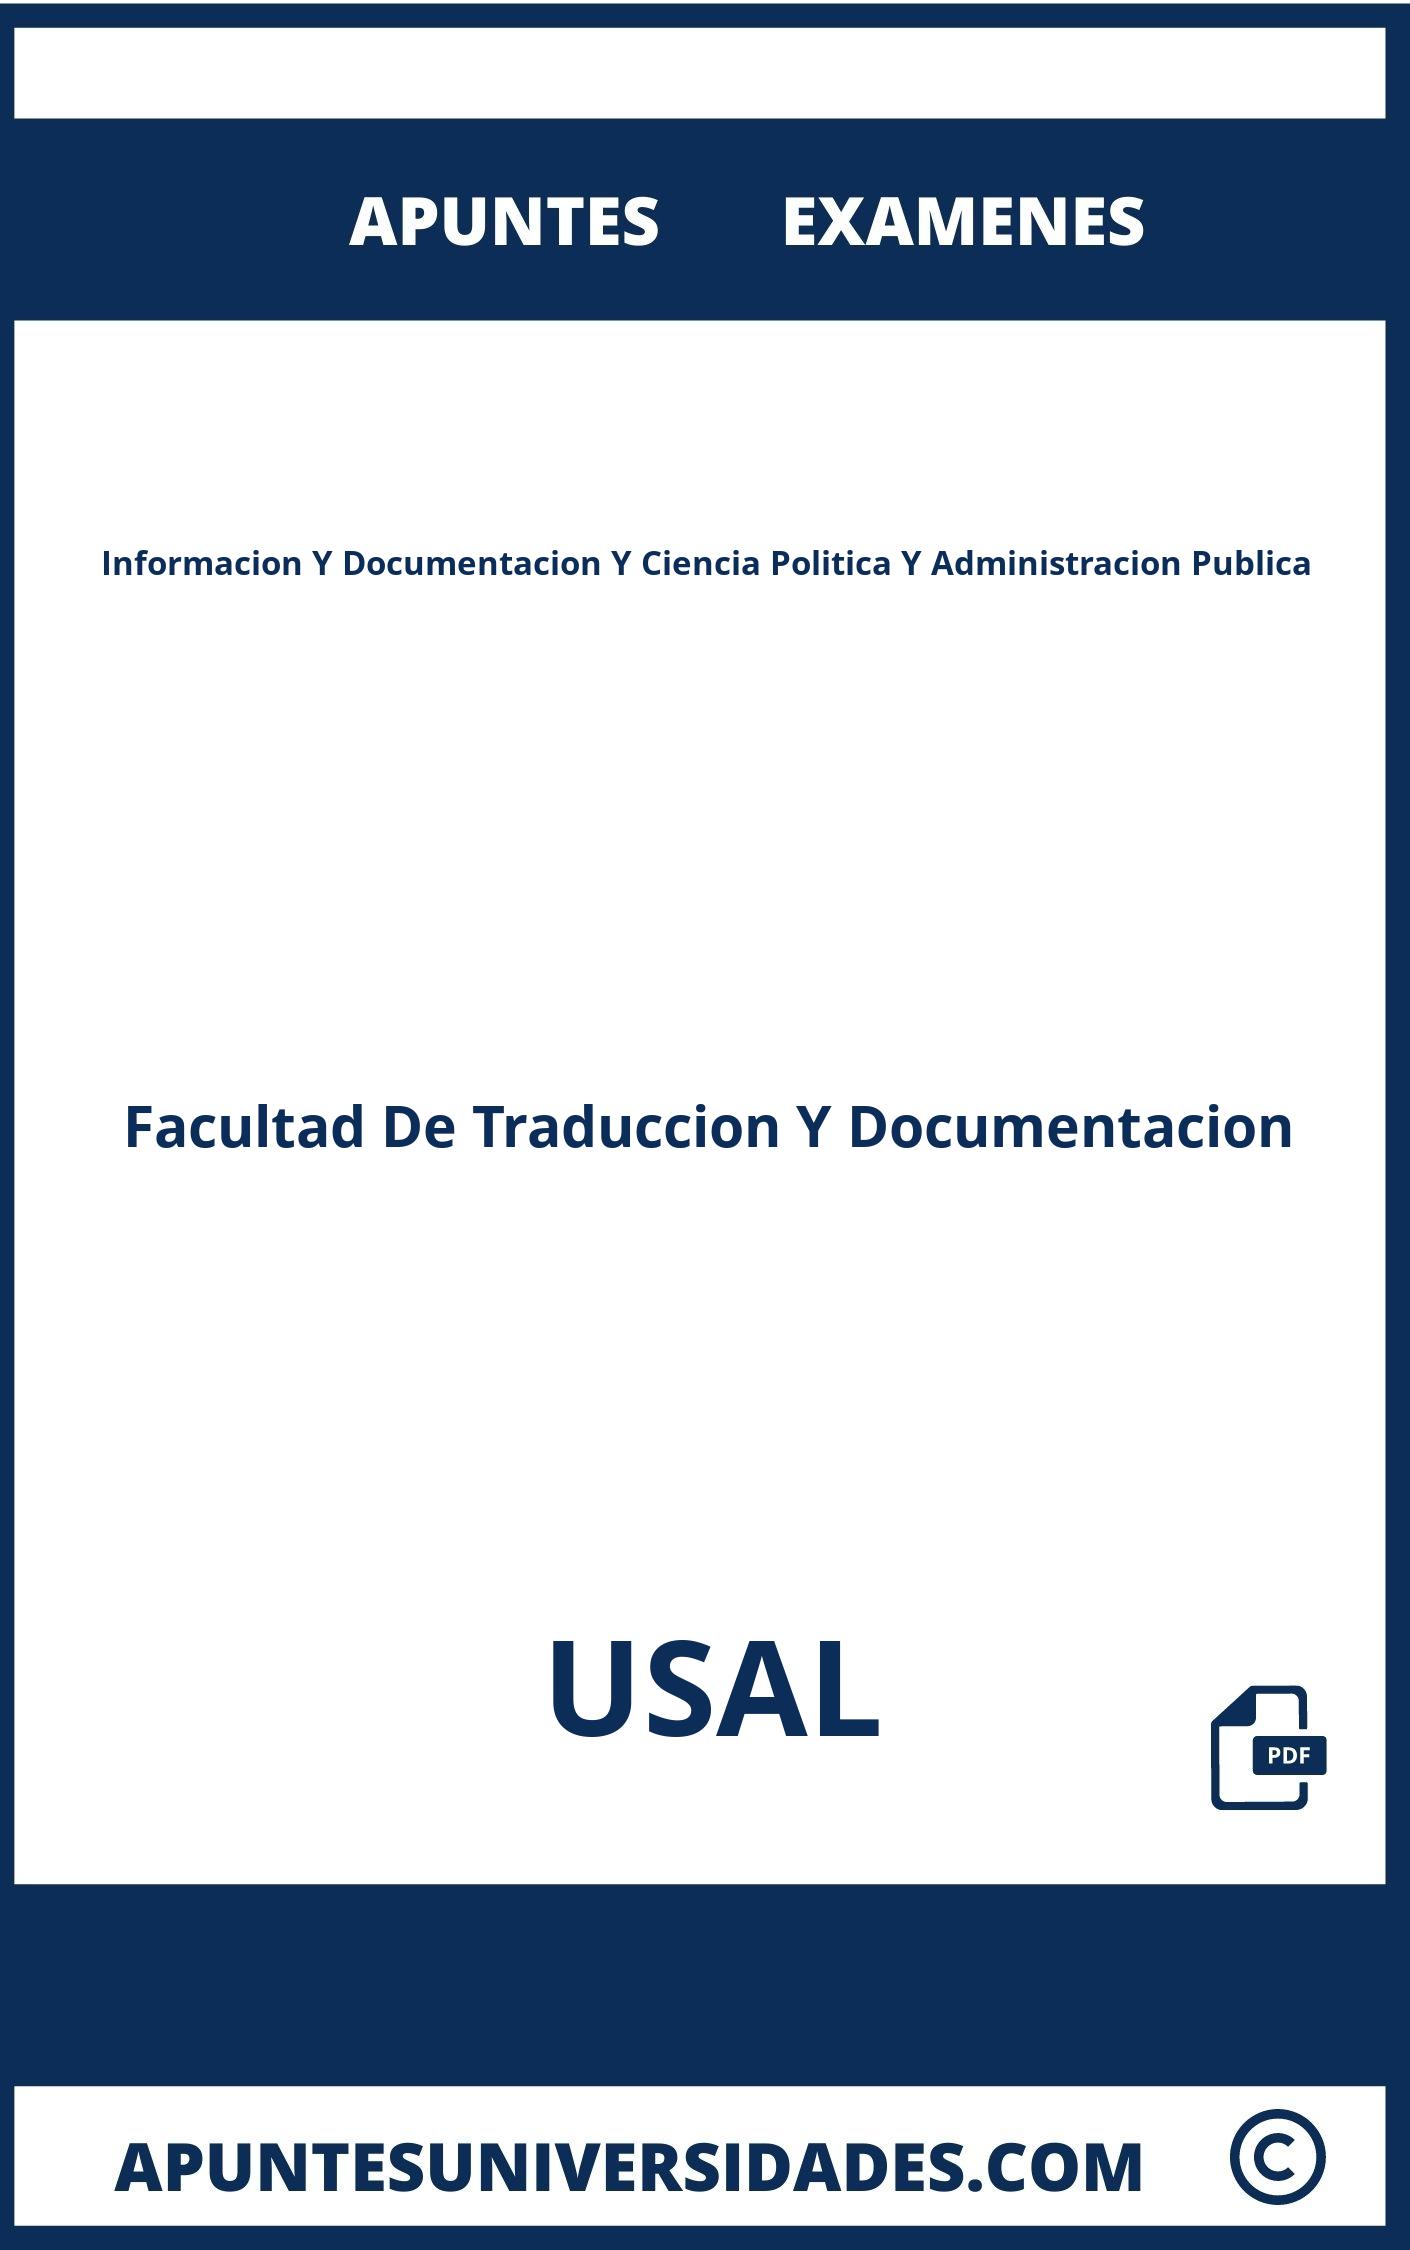 Examenes y Apuntes Informacion Y Documentacion Y Ciencia Politica Y Administracion Publica USAL